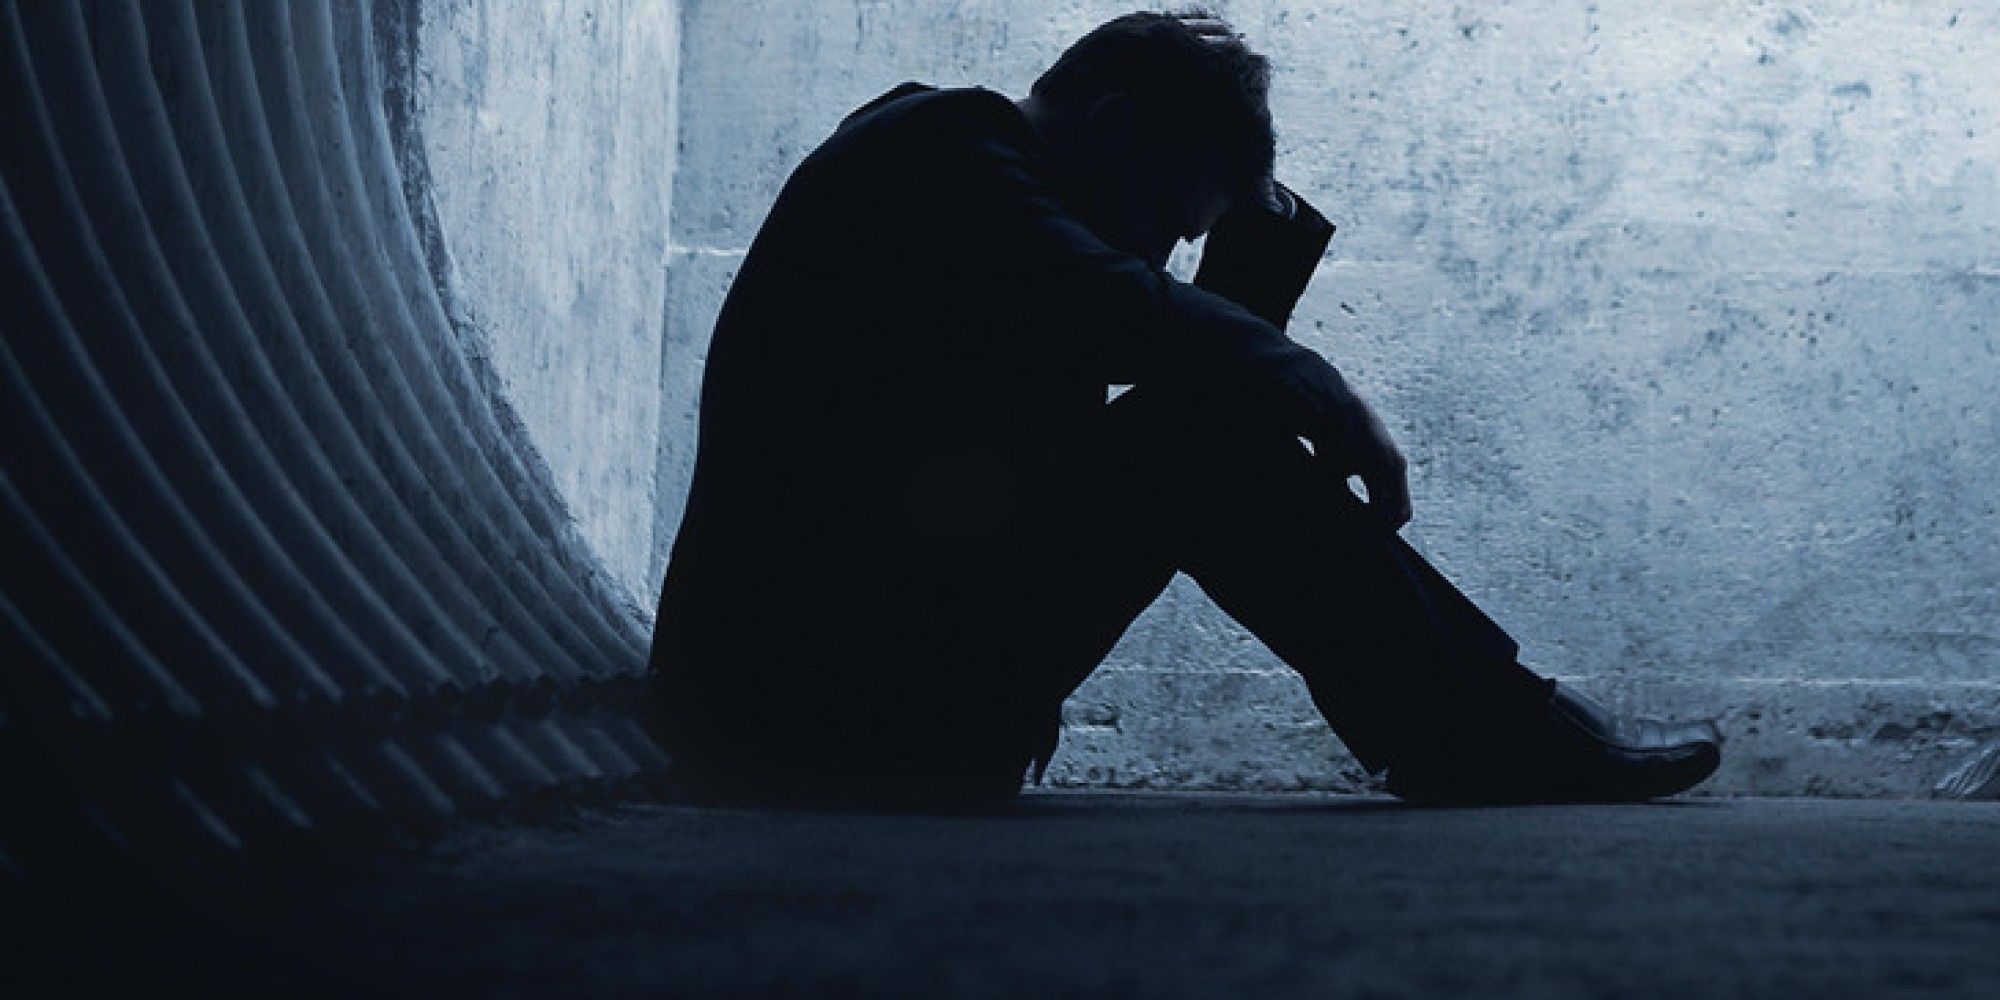 अकेलापन और मानसिक तनाव एक बड़ी स्वास्थ्य समस्या के रूप में उभर रहे हैं